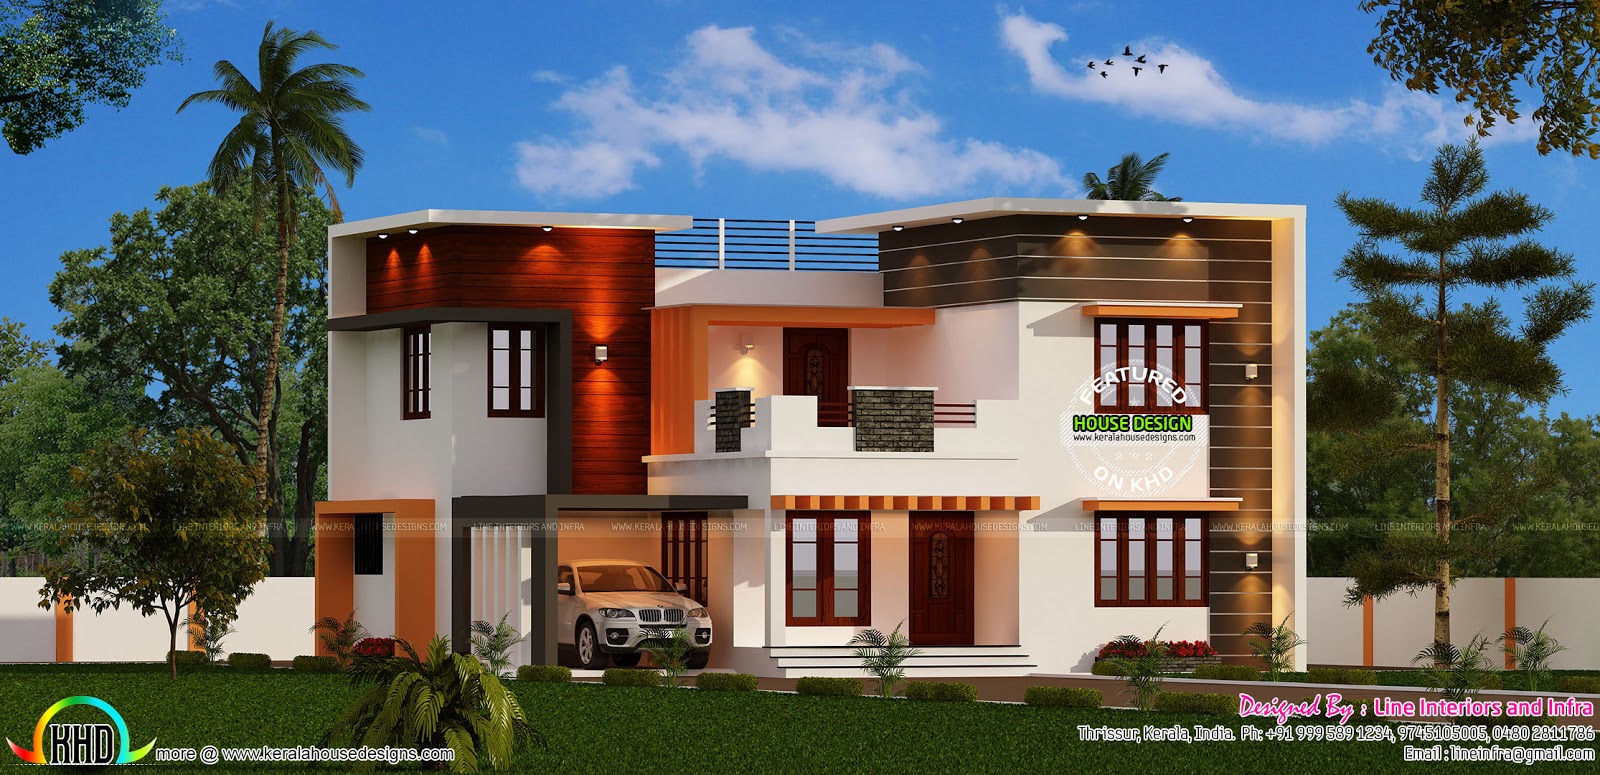  Modern  4 bedroom 3000  sq  ft  Kerala home  design  and floor 